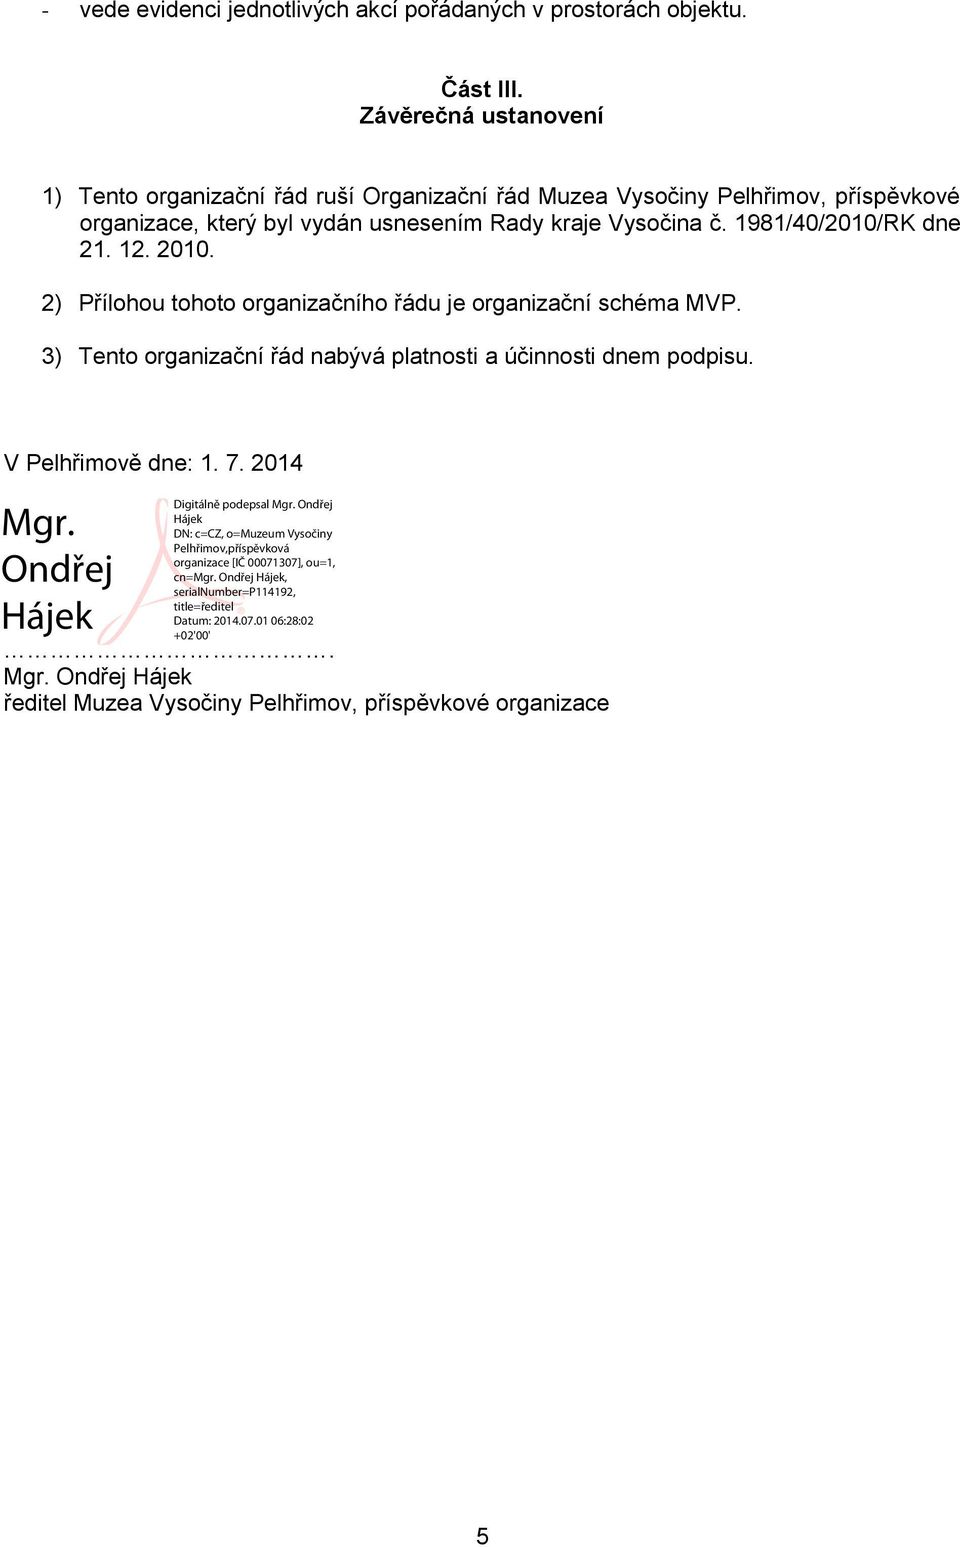 vydán usnesením Rady kraje Vysočina č. 1981/40/2010/RK dne 21. 12. 2010.